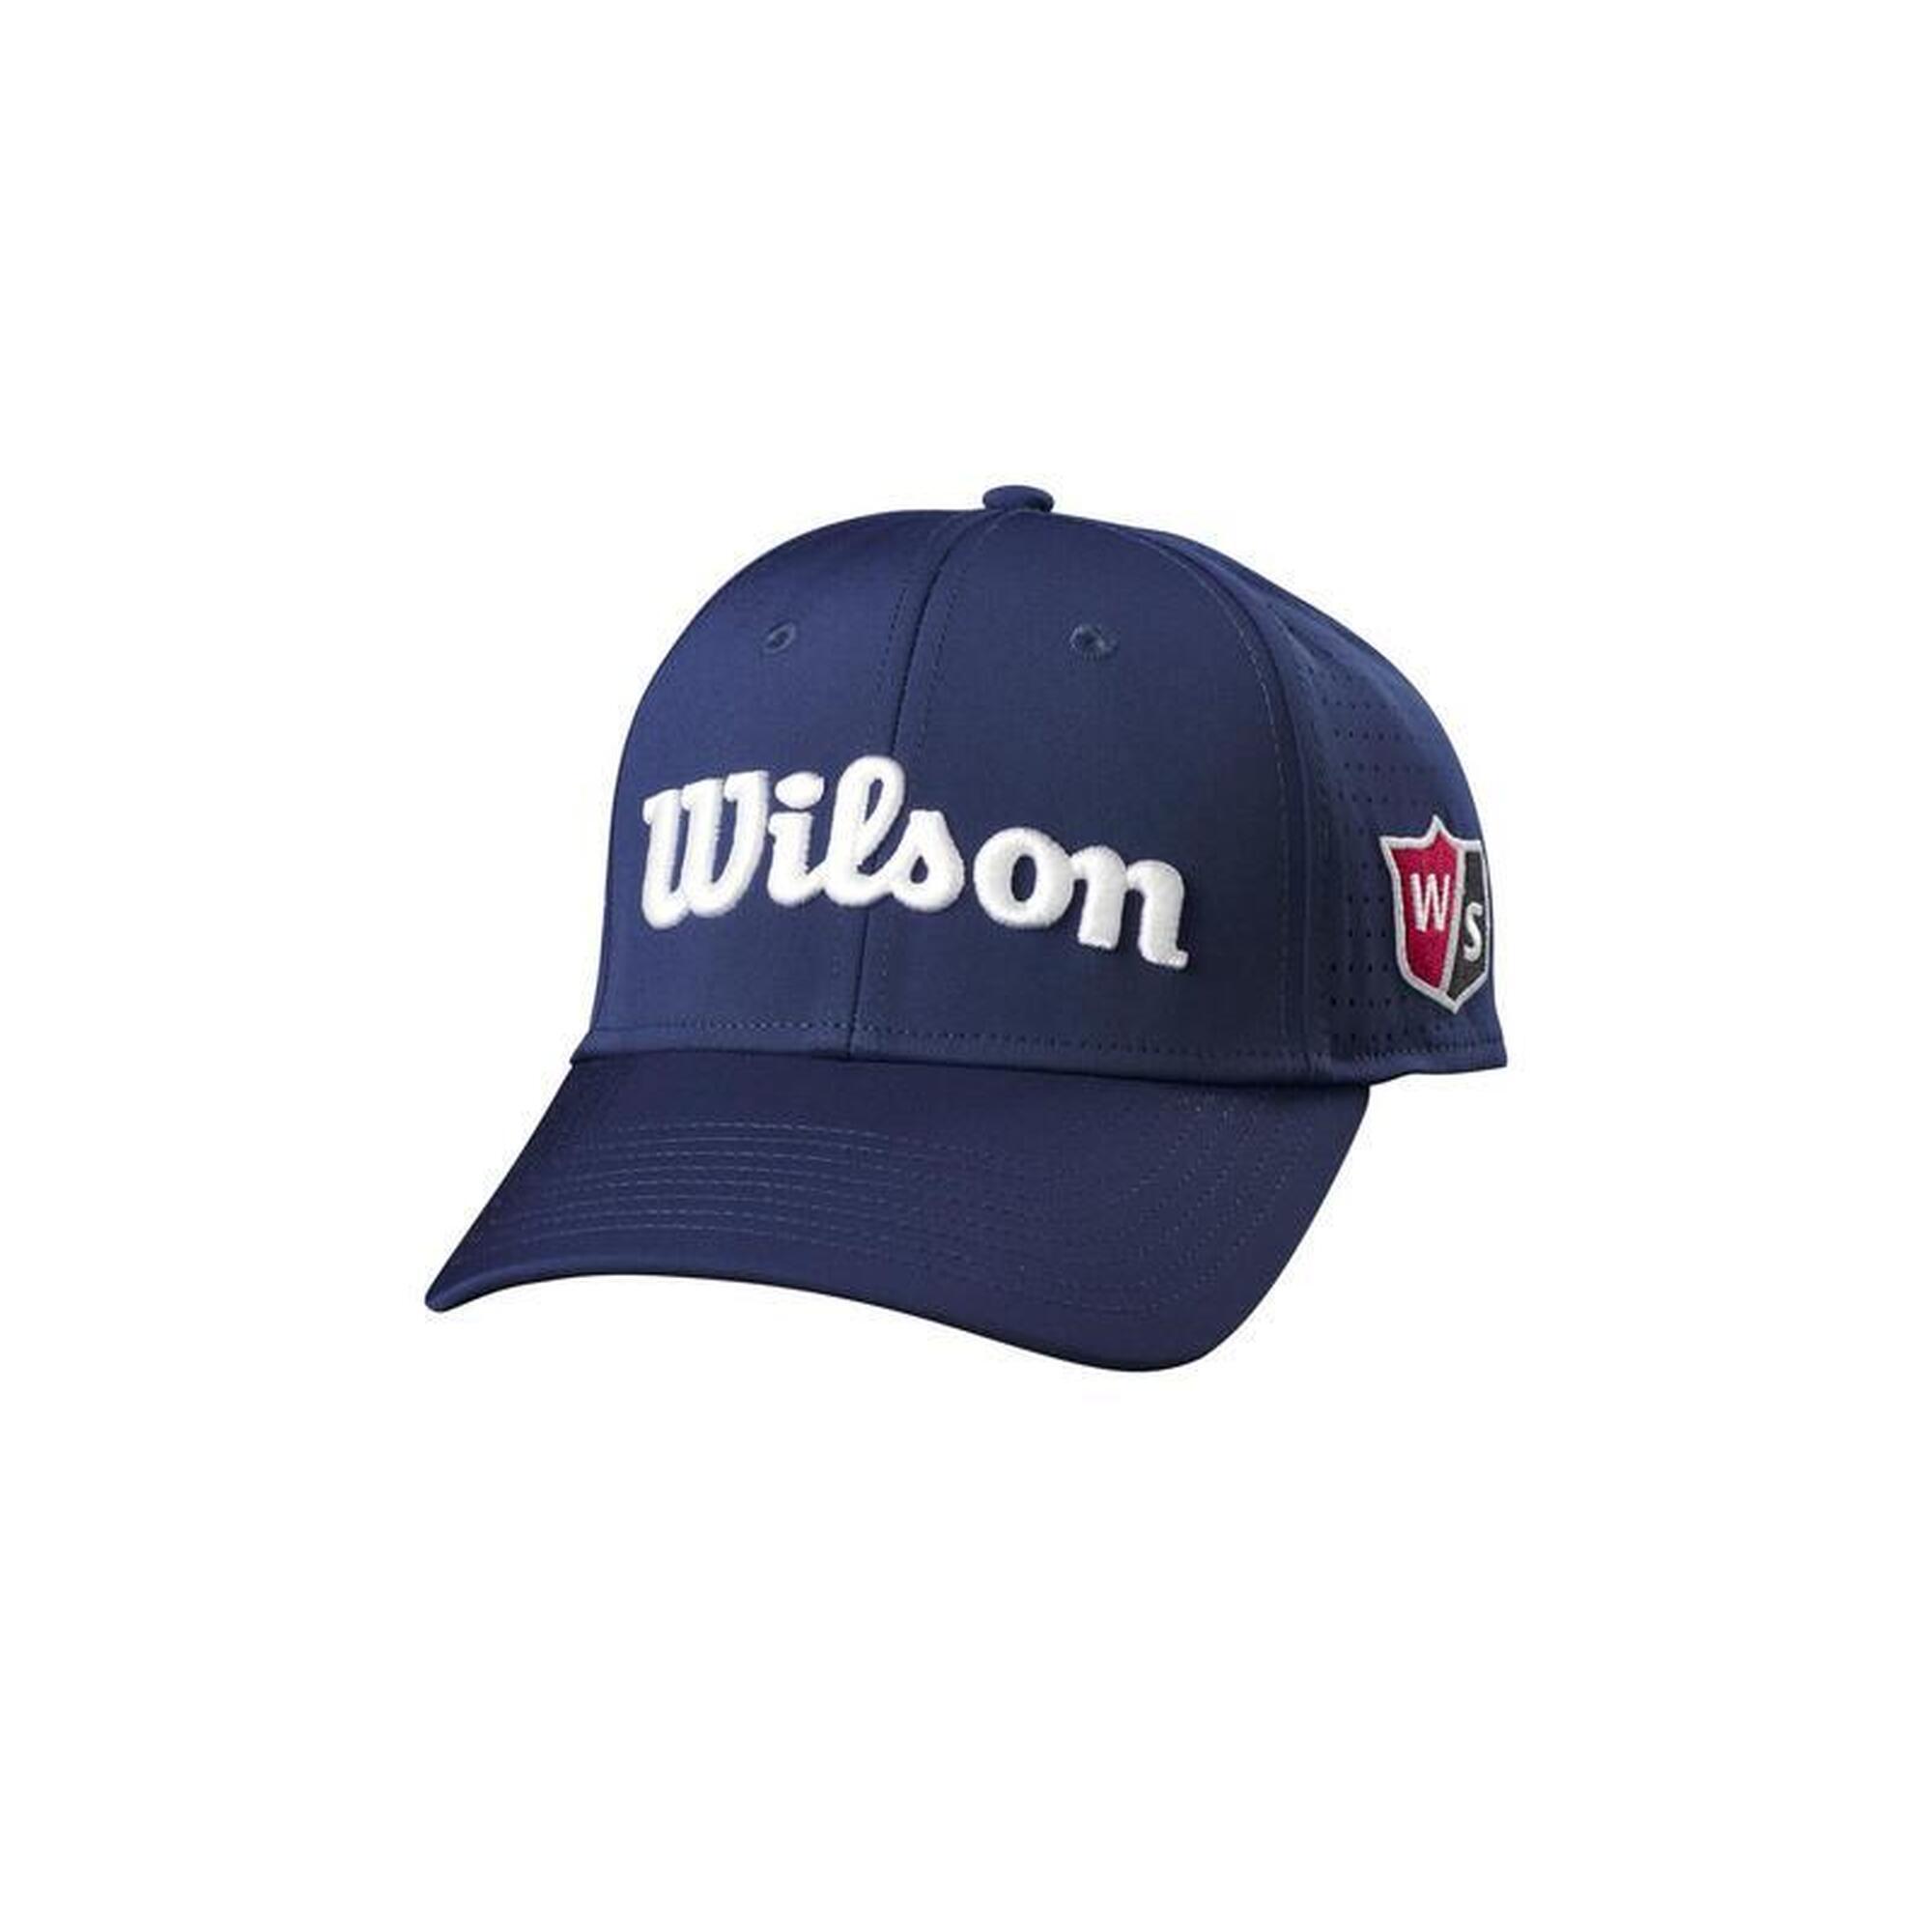 WILSON Golfpet   Staf Mesh  Donker blauw